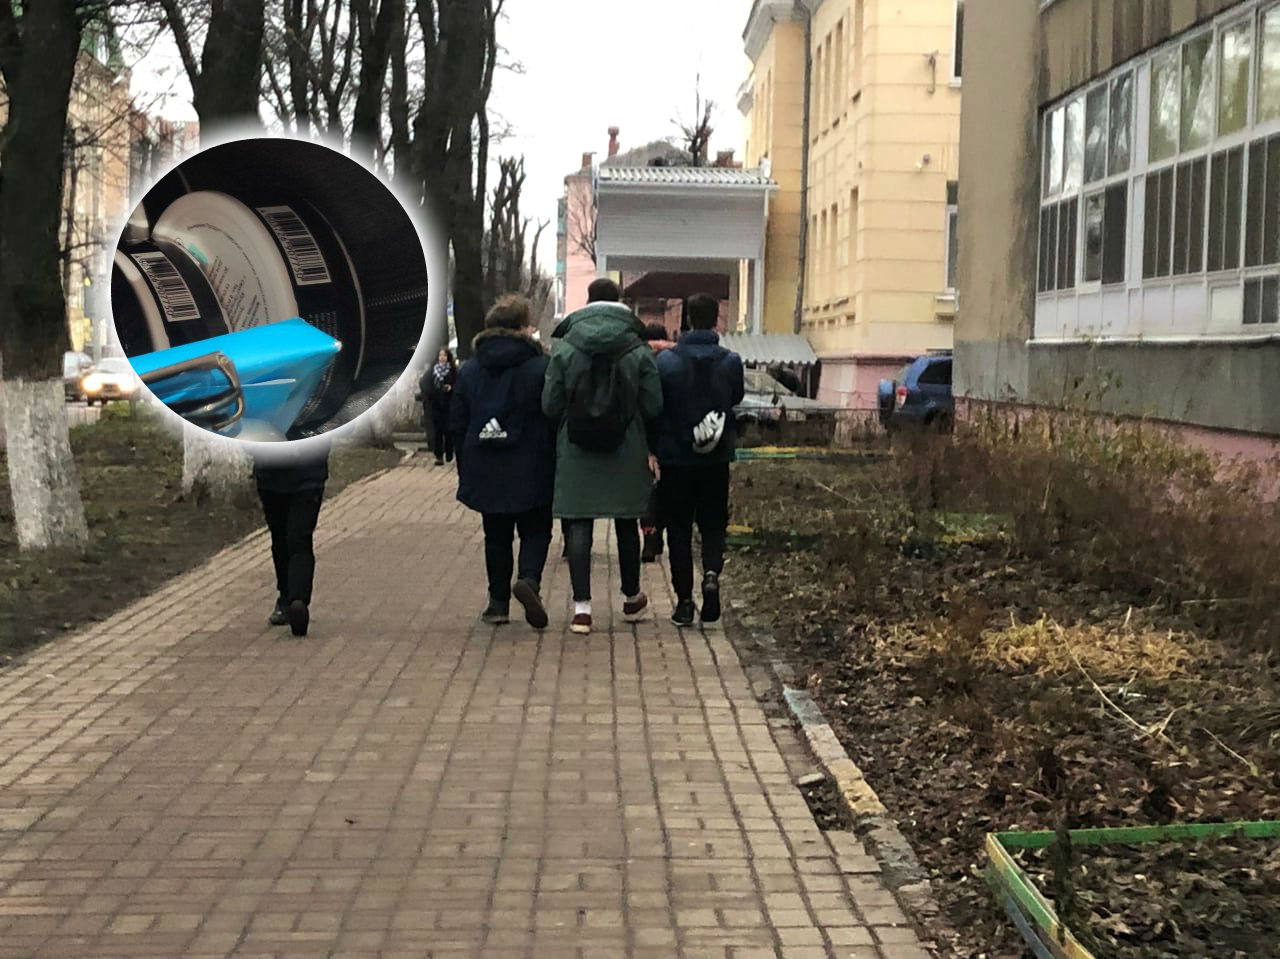 "Он выжигает губы": депутаты требуют запретить «снюс» в Ярославле